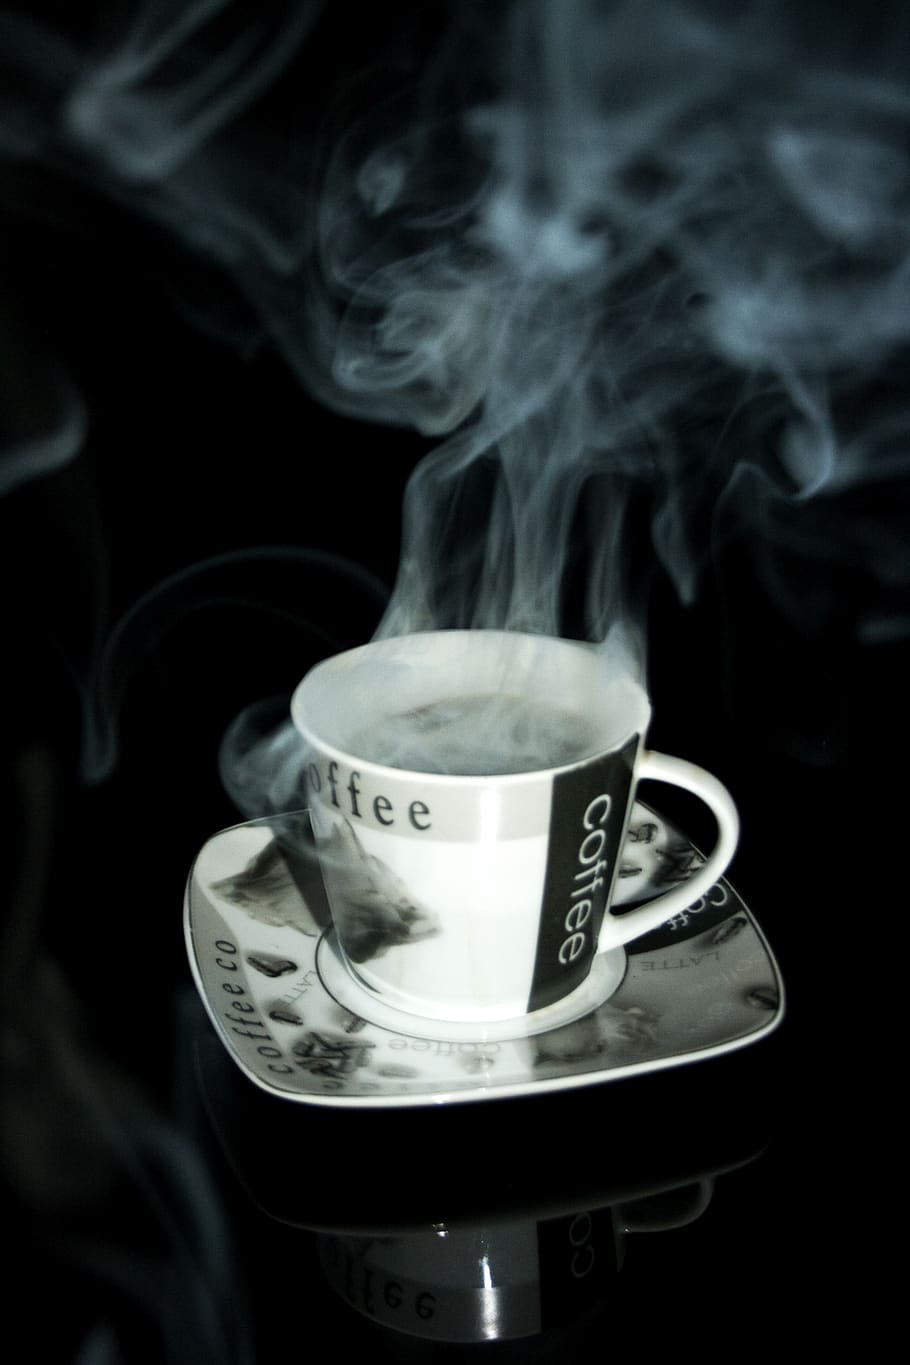 kopi, cangkir teh, hidangan, kafe, pembuat kopi, secangkir kopi, porselen, kafein, asap - struktur fisik, cangkir